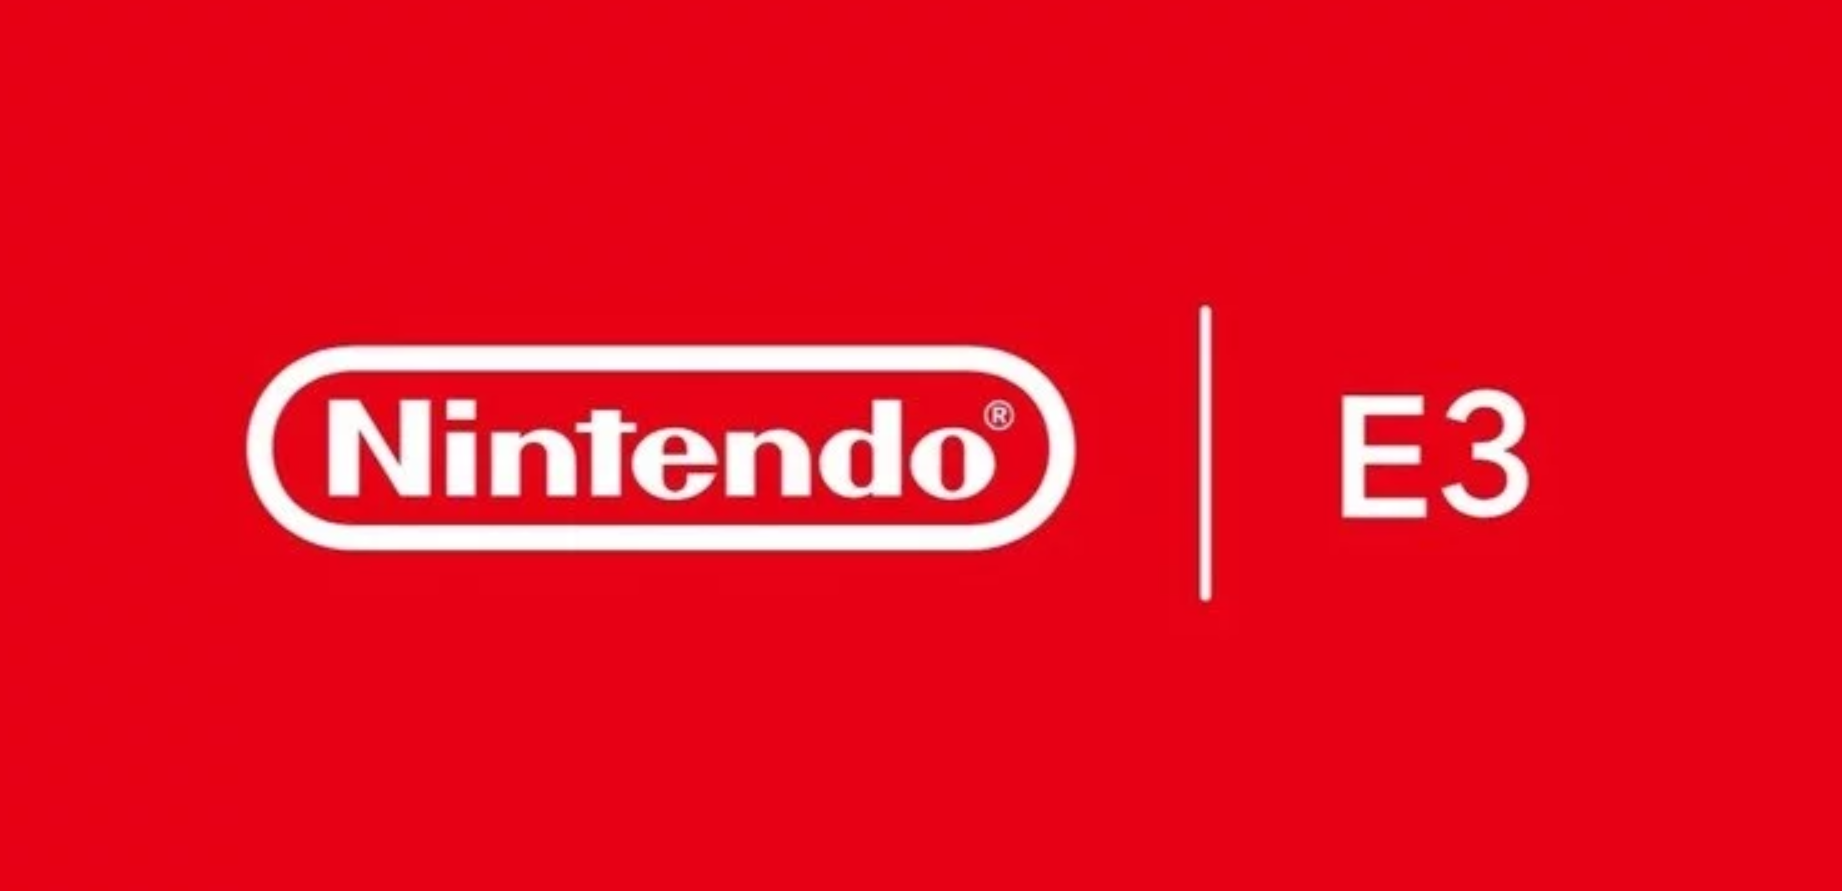 صورة Nintendo تدعم موقف منظمة ESA لإلغاء معرض E3 لهذا العام ولا تحدد خطتها القادمه